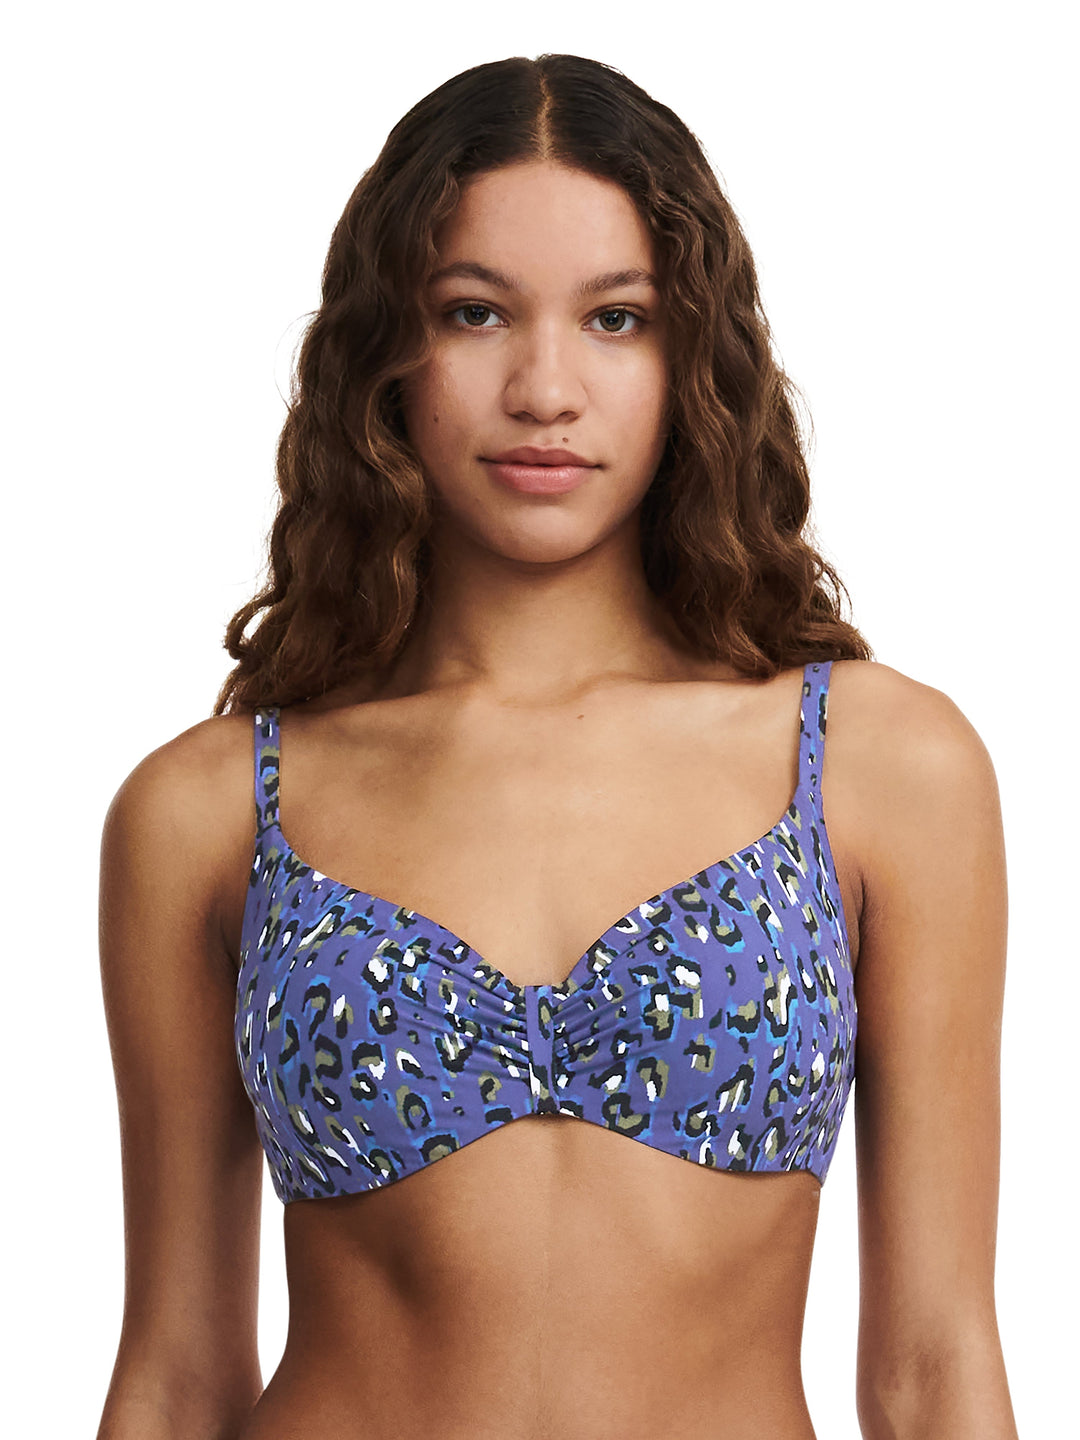 Chantelle Swimwear Eos Covering Underwired Bra - Blue Leopard Full Cup Bikini Chantelle 